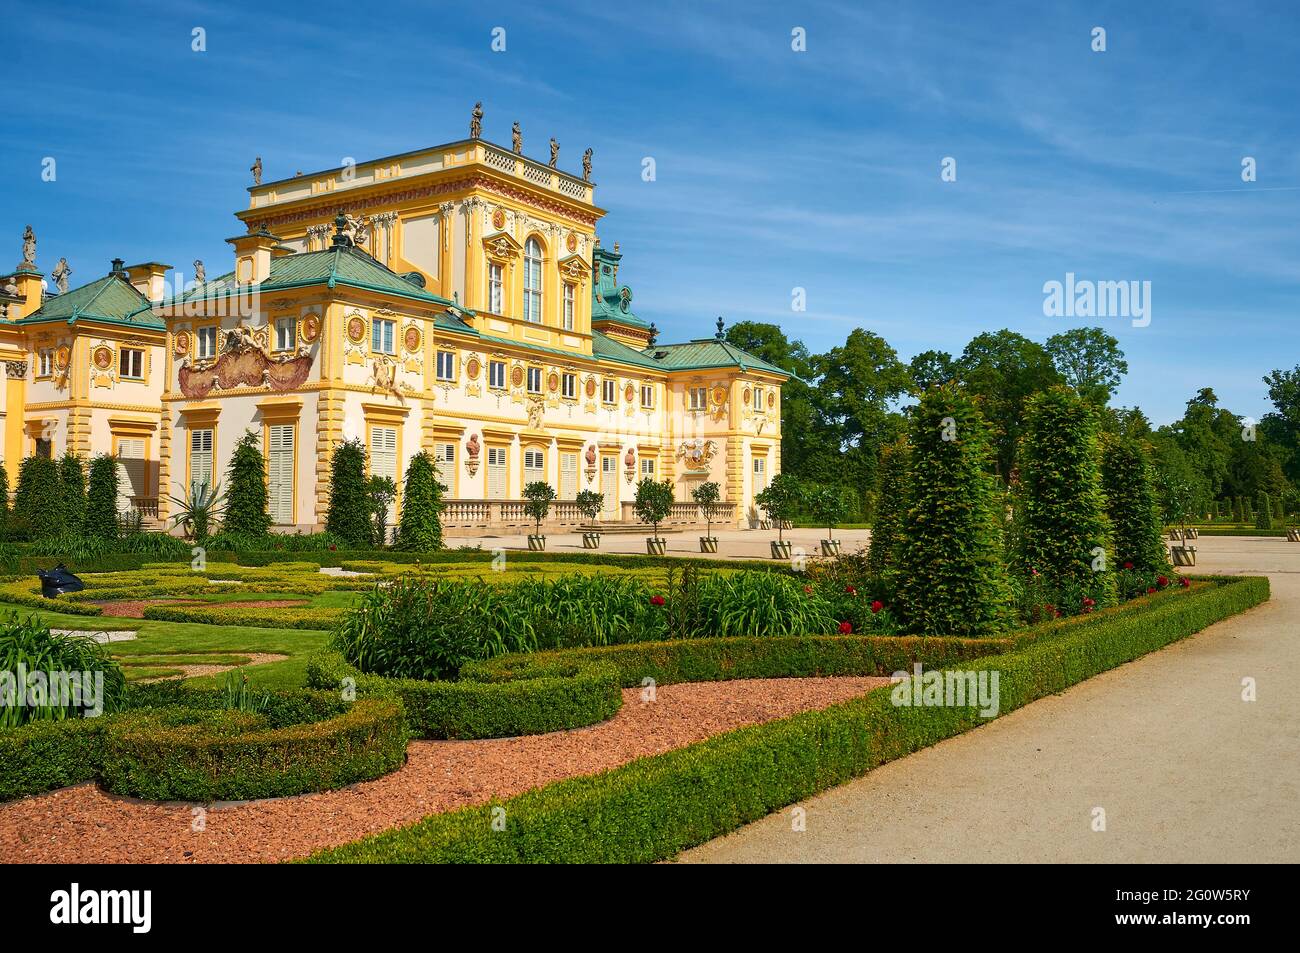 Schloss in Wilanow, die barocke Residenz des Königs von Polen Jan III Sobieski. Blick auf die Fassade von den Gärten Stockfoto